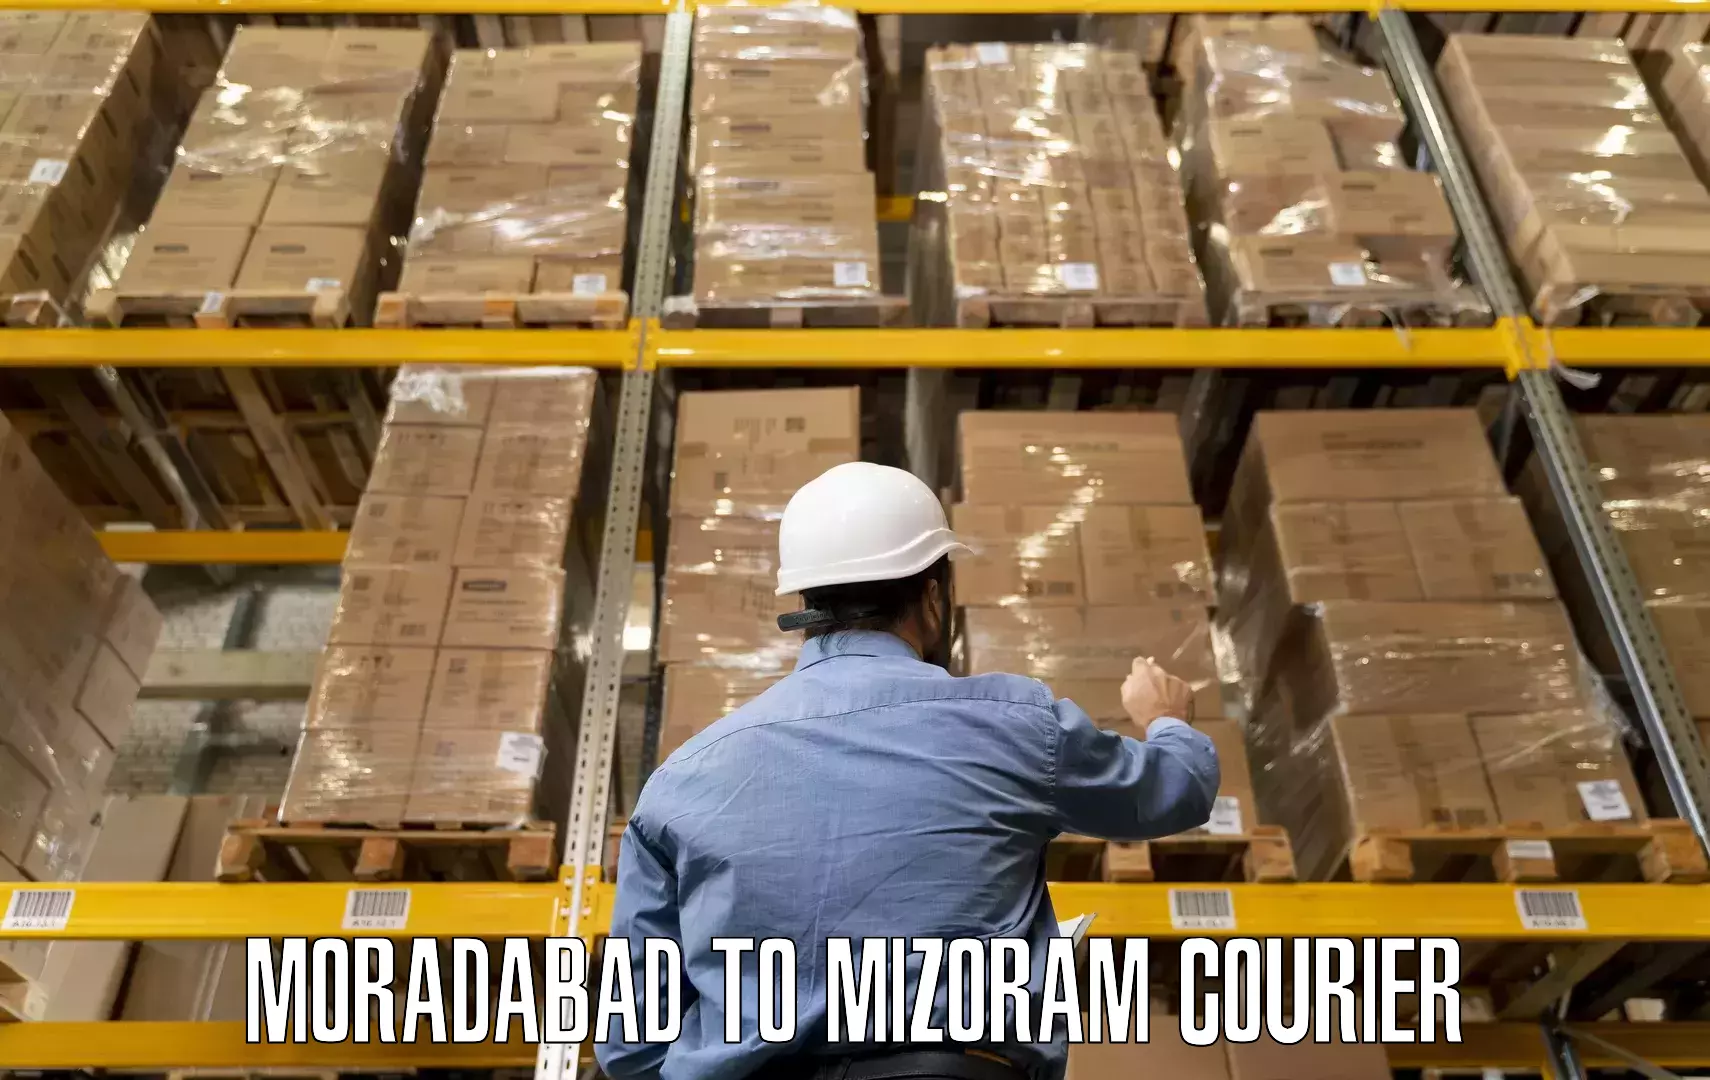 High-quality moving services Moradabad to Mizoram